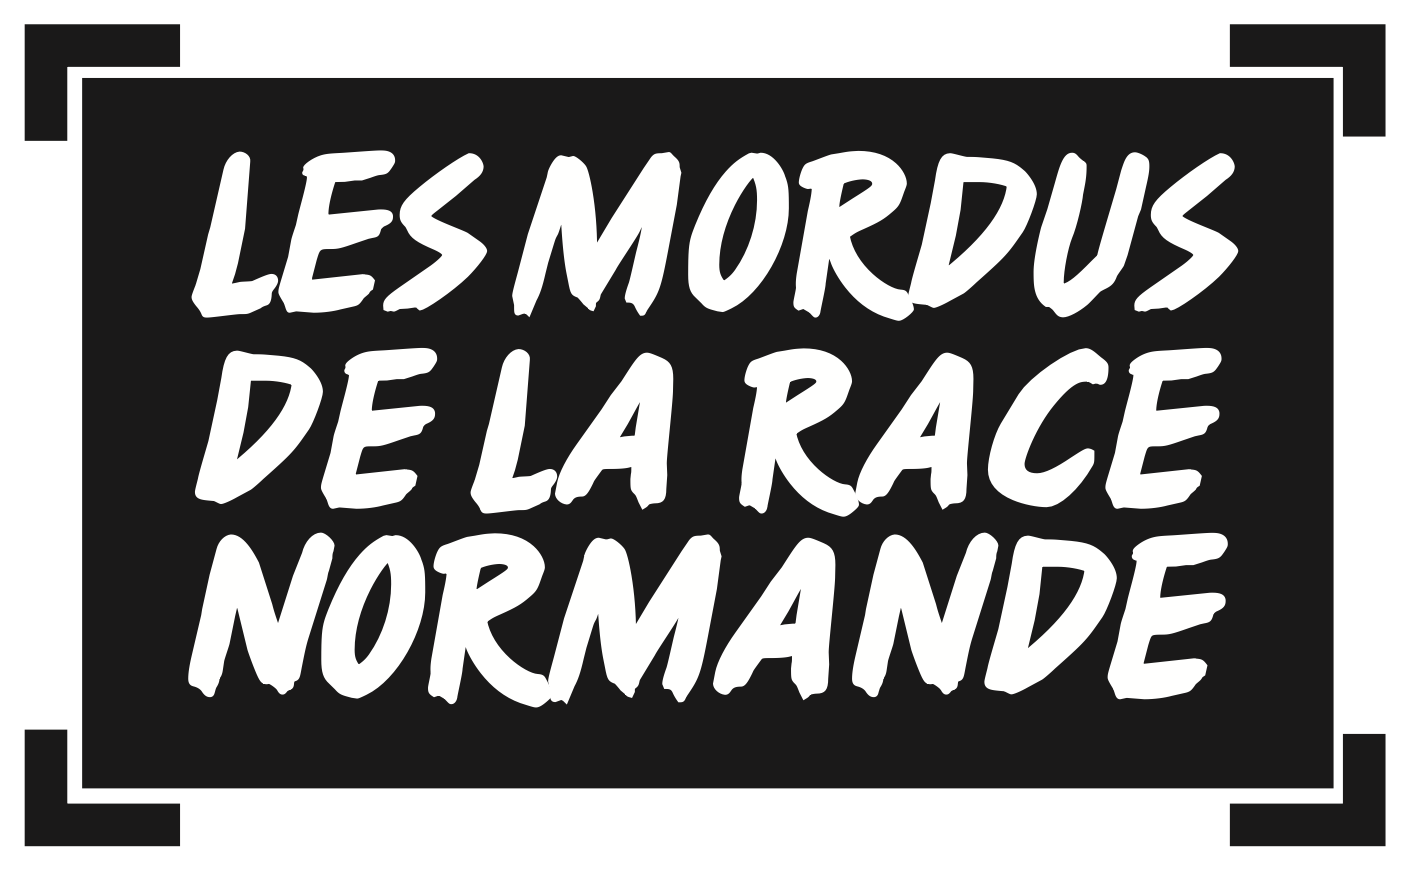 Les Mordus de la Race Normande